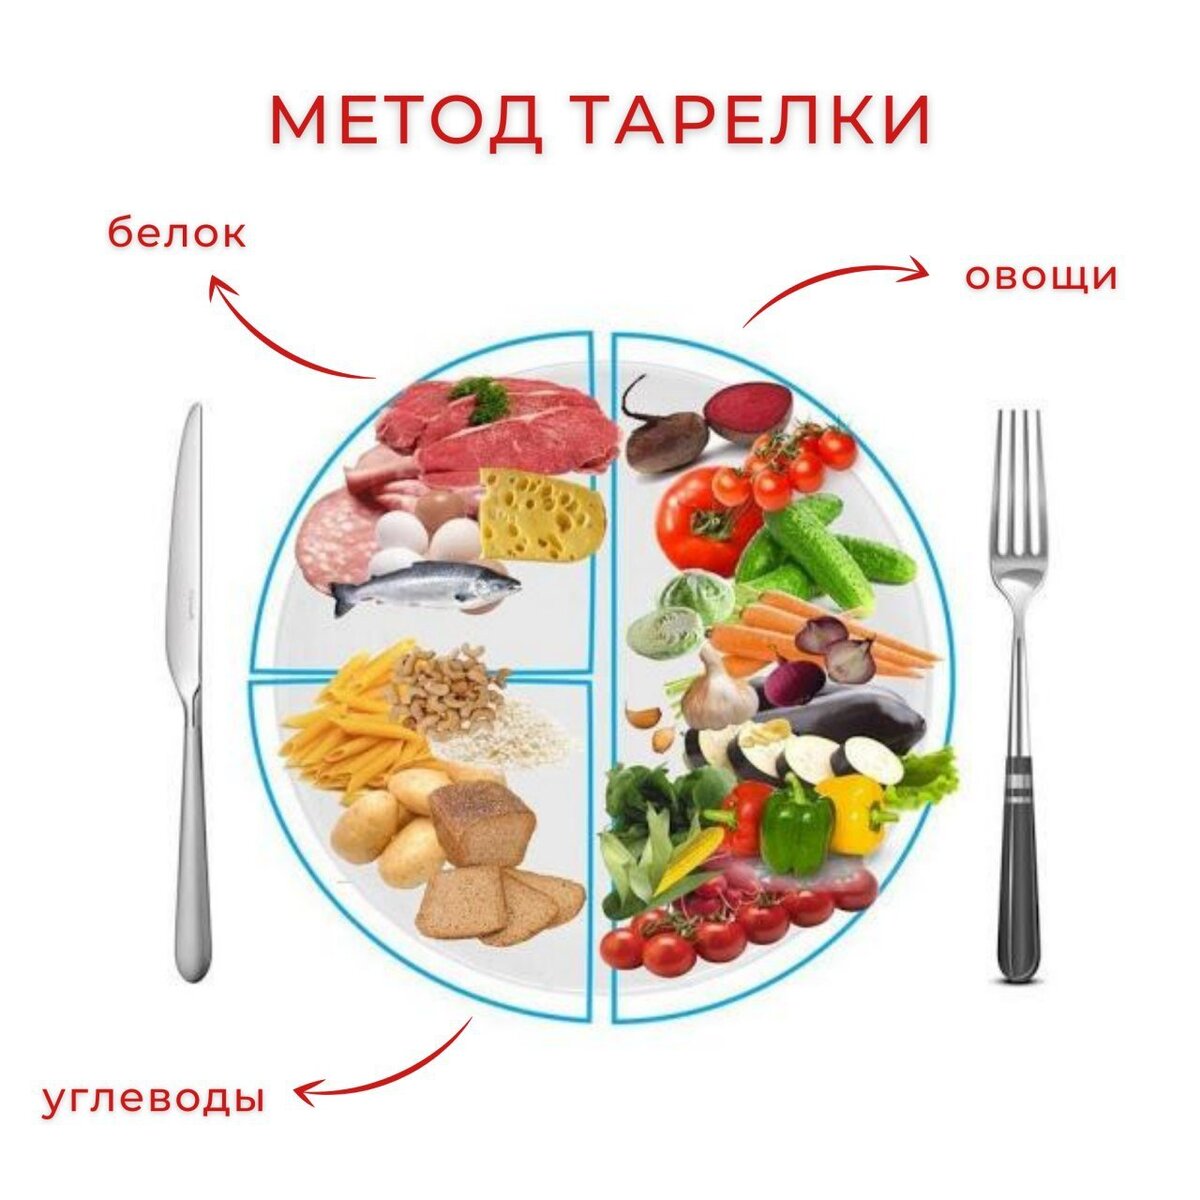 фото правильной еды на тарелке для похудения